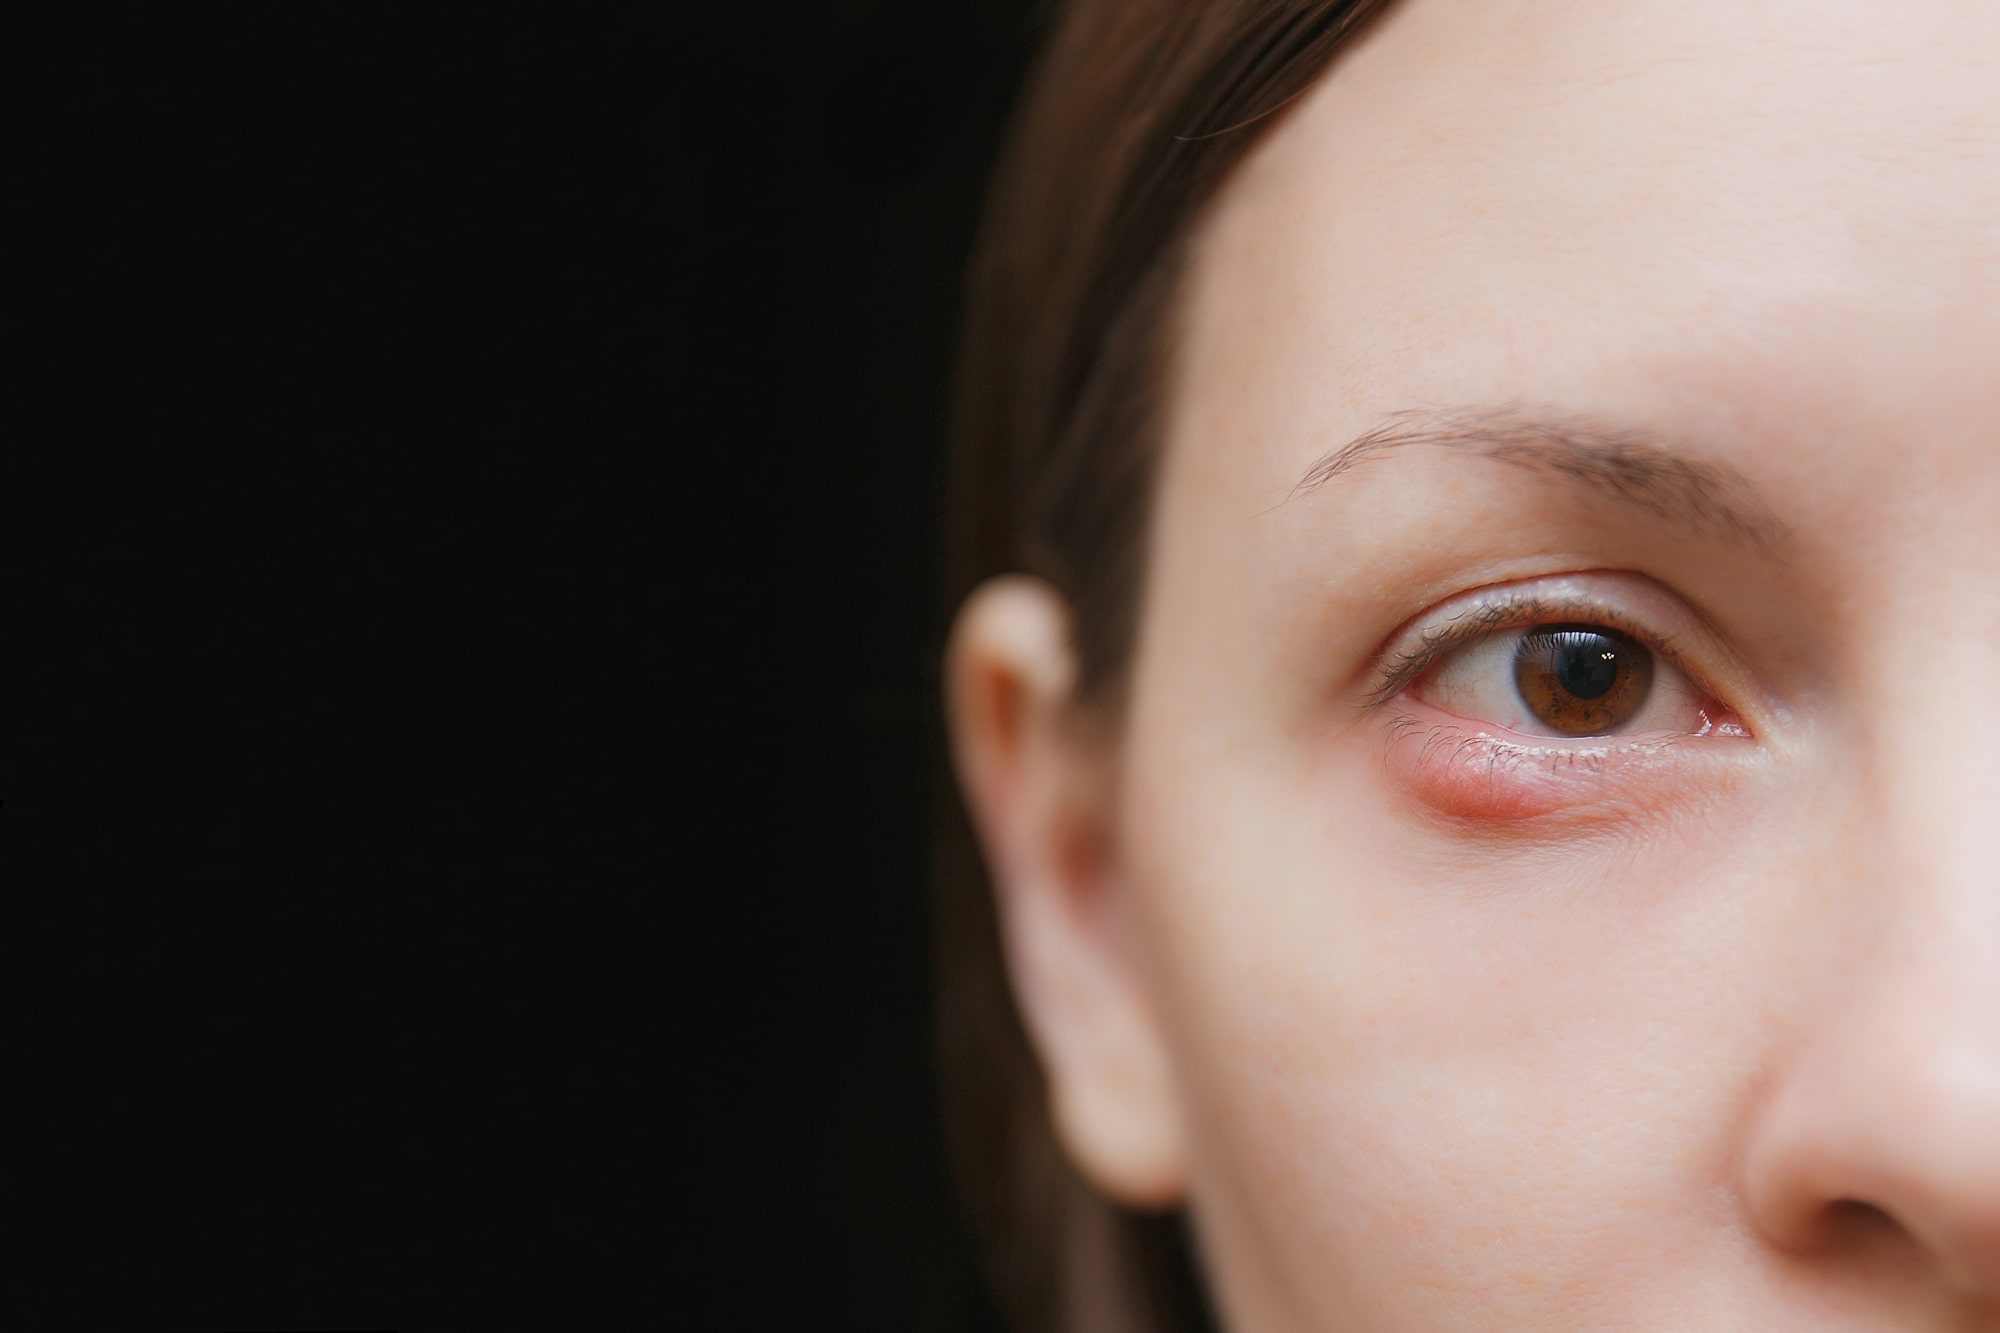 Ječmenac na oku– koji su uzroci, simptomi i liječenje?